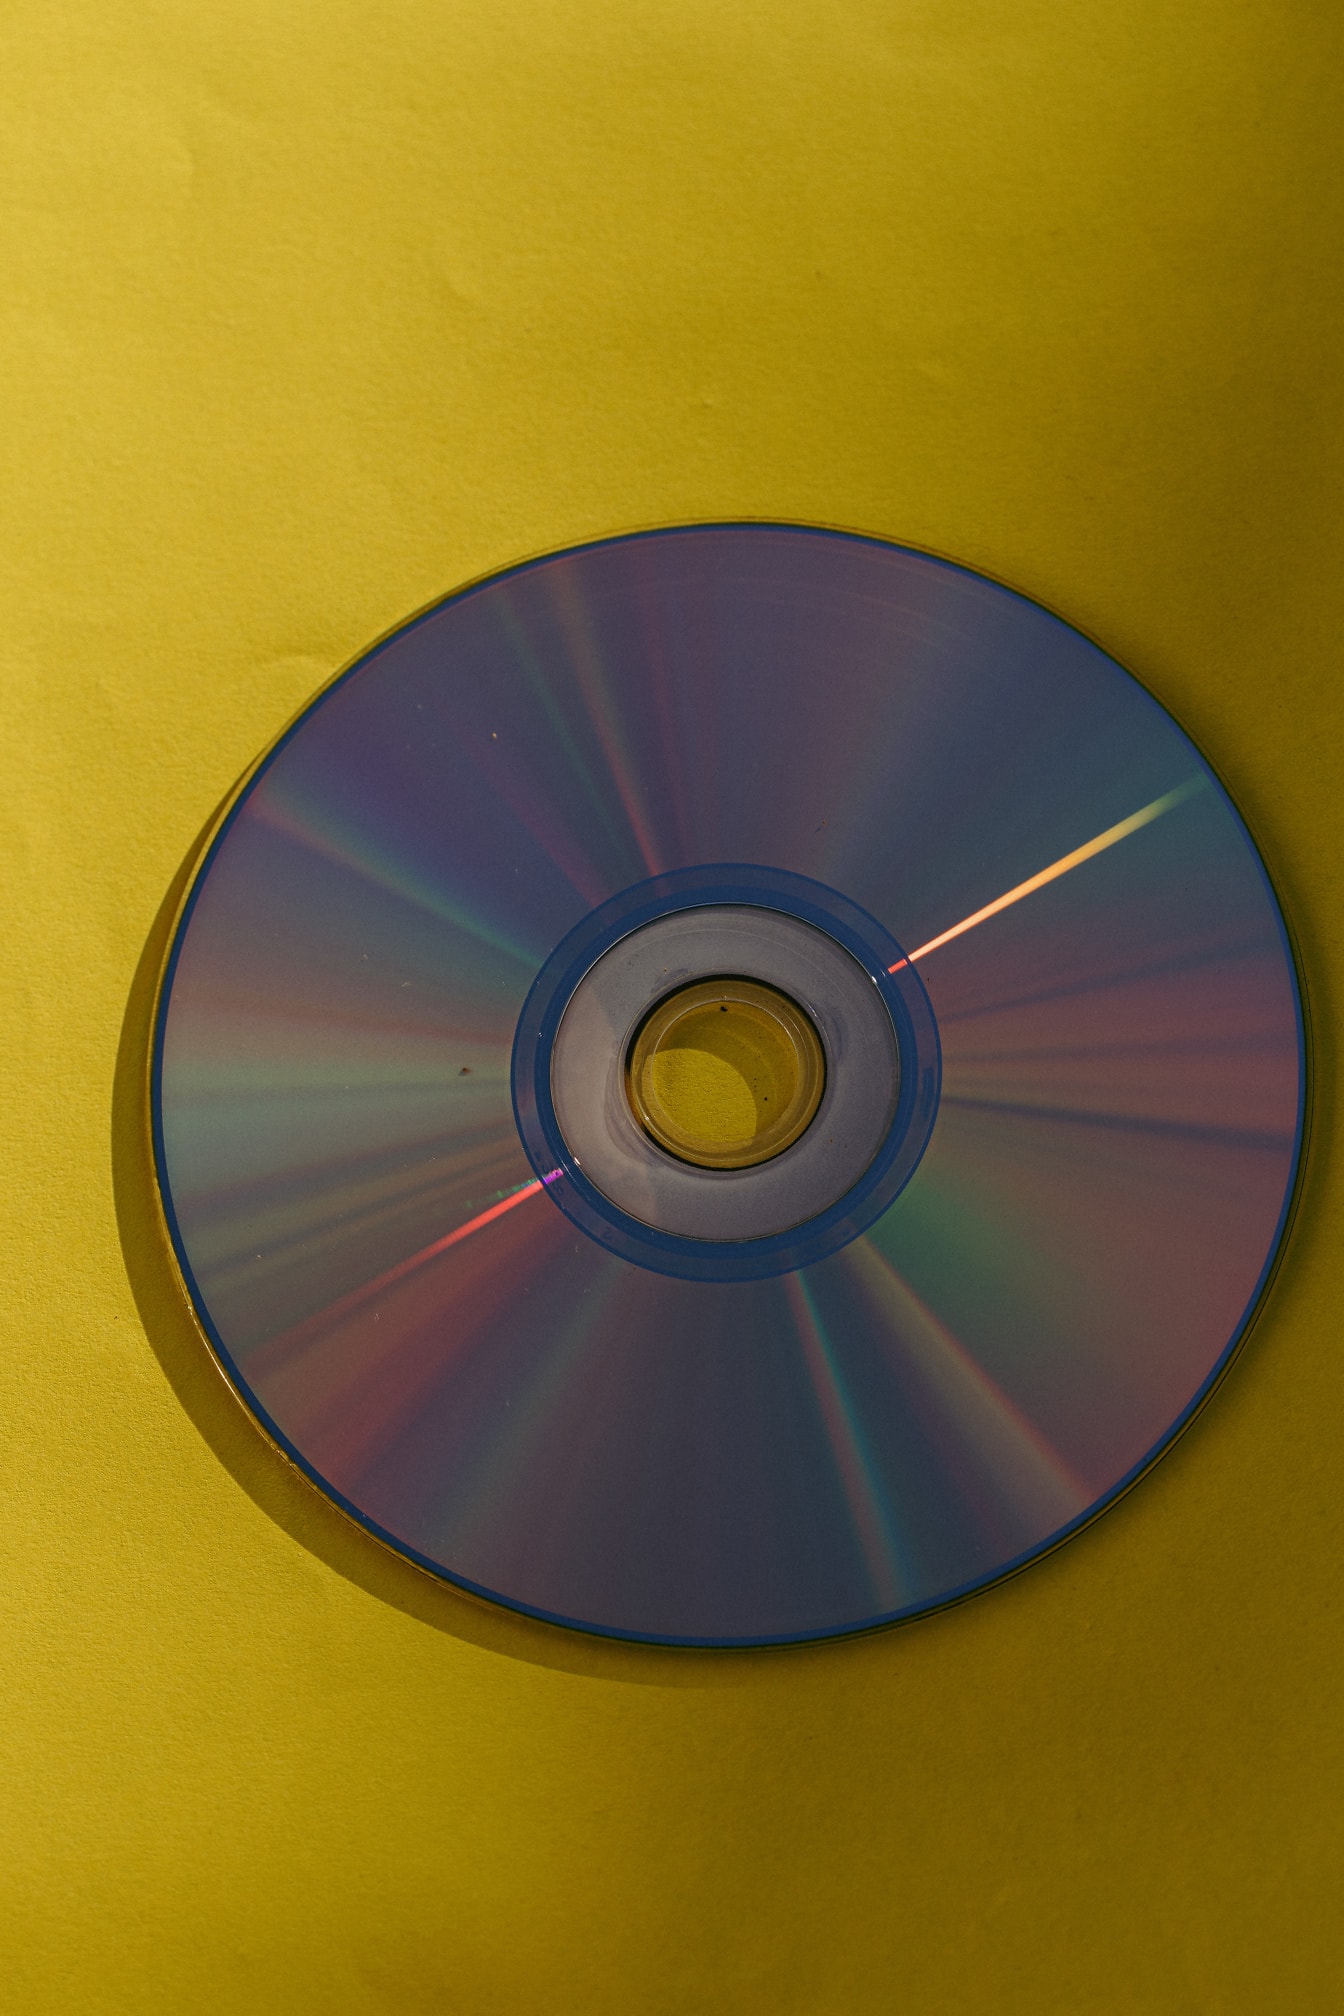 Резервный DVD диск с глянцевым отражением на желтой бумаге